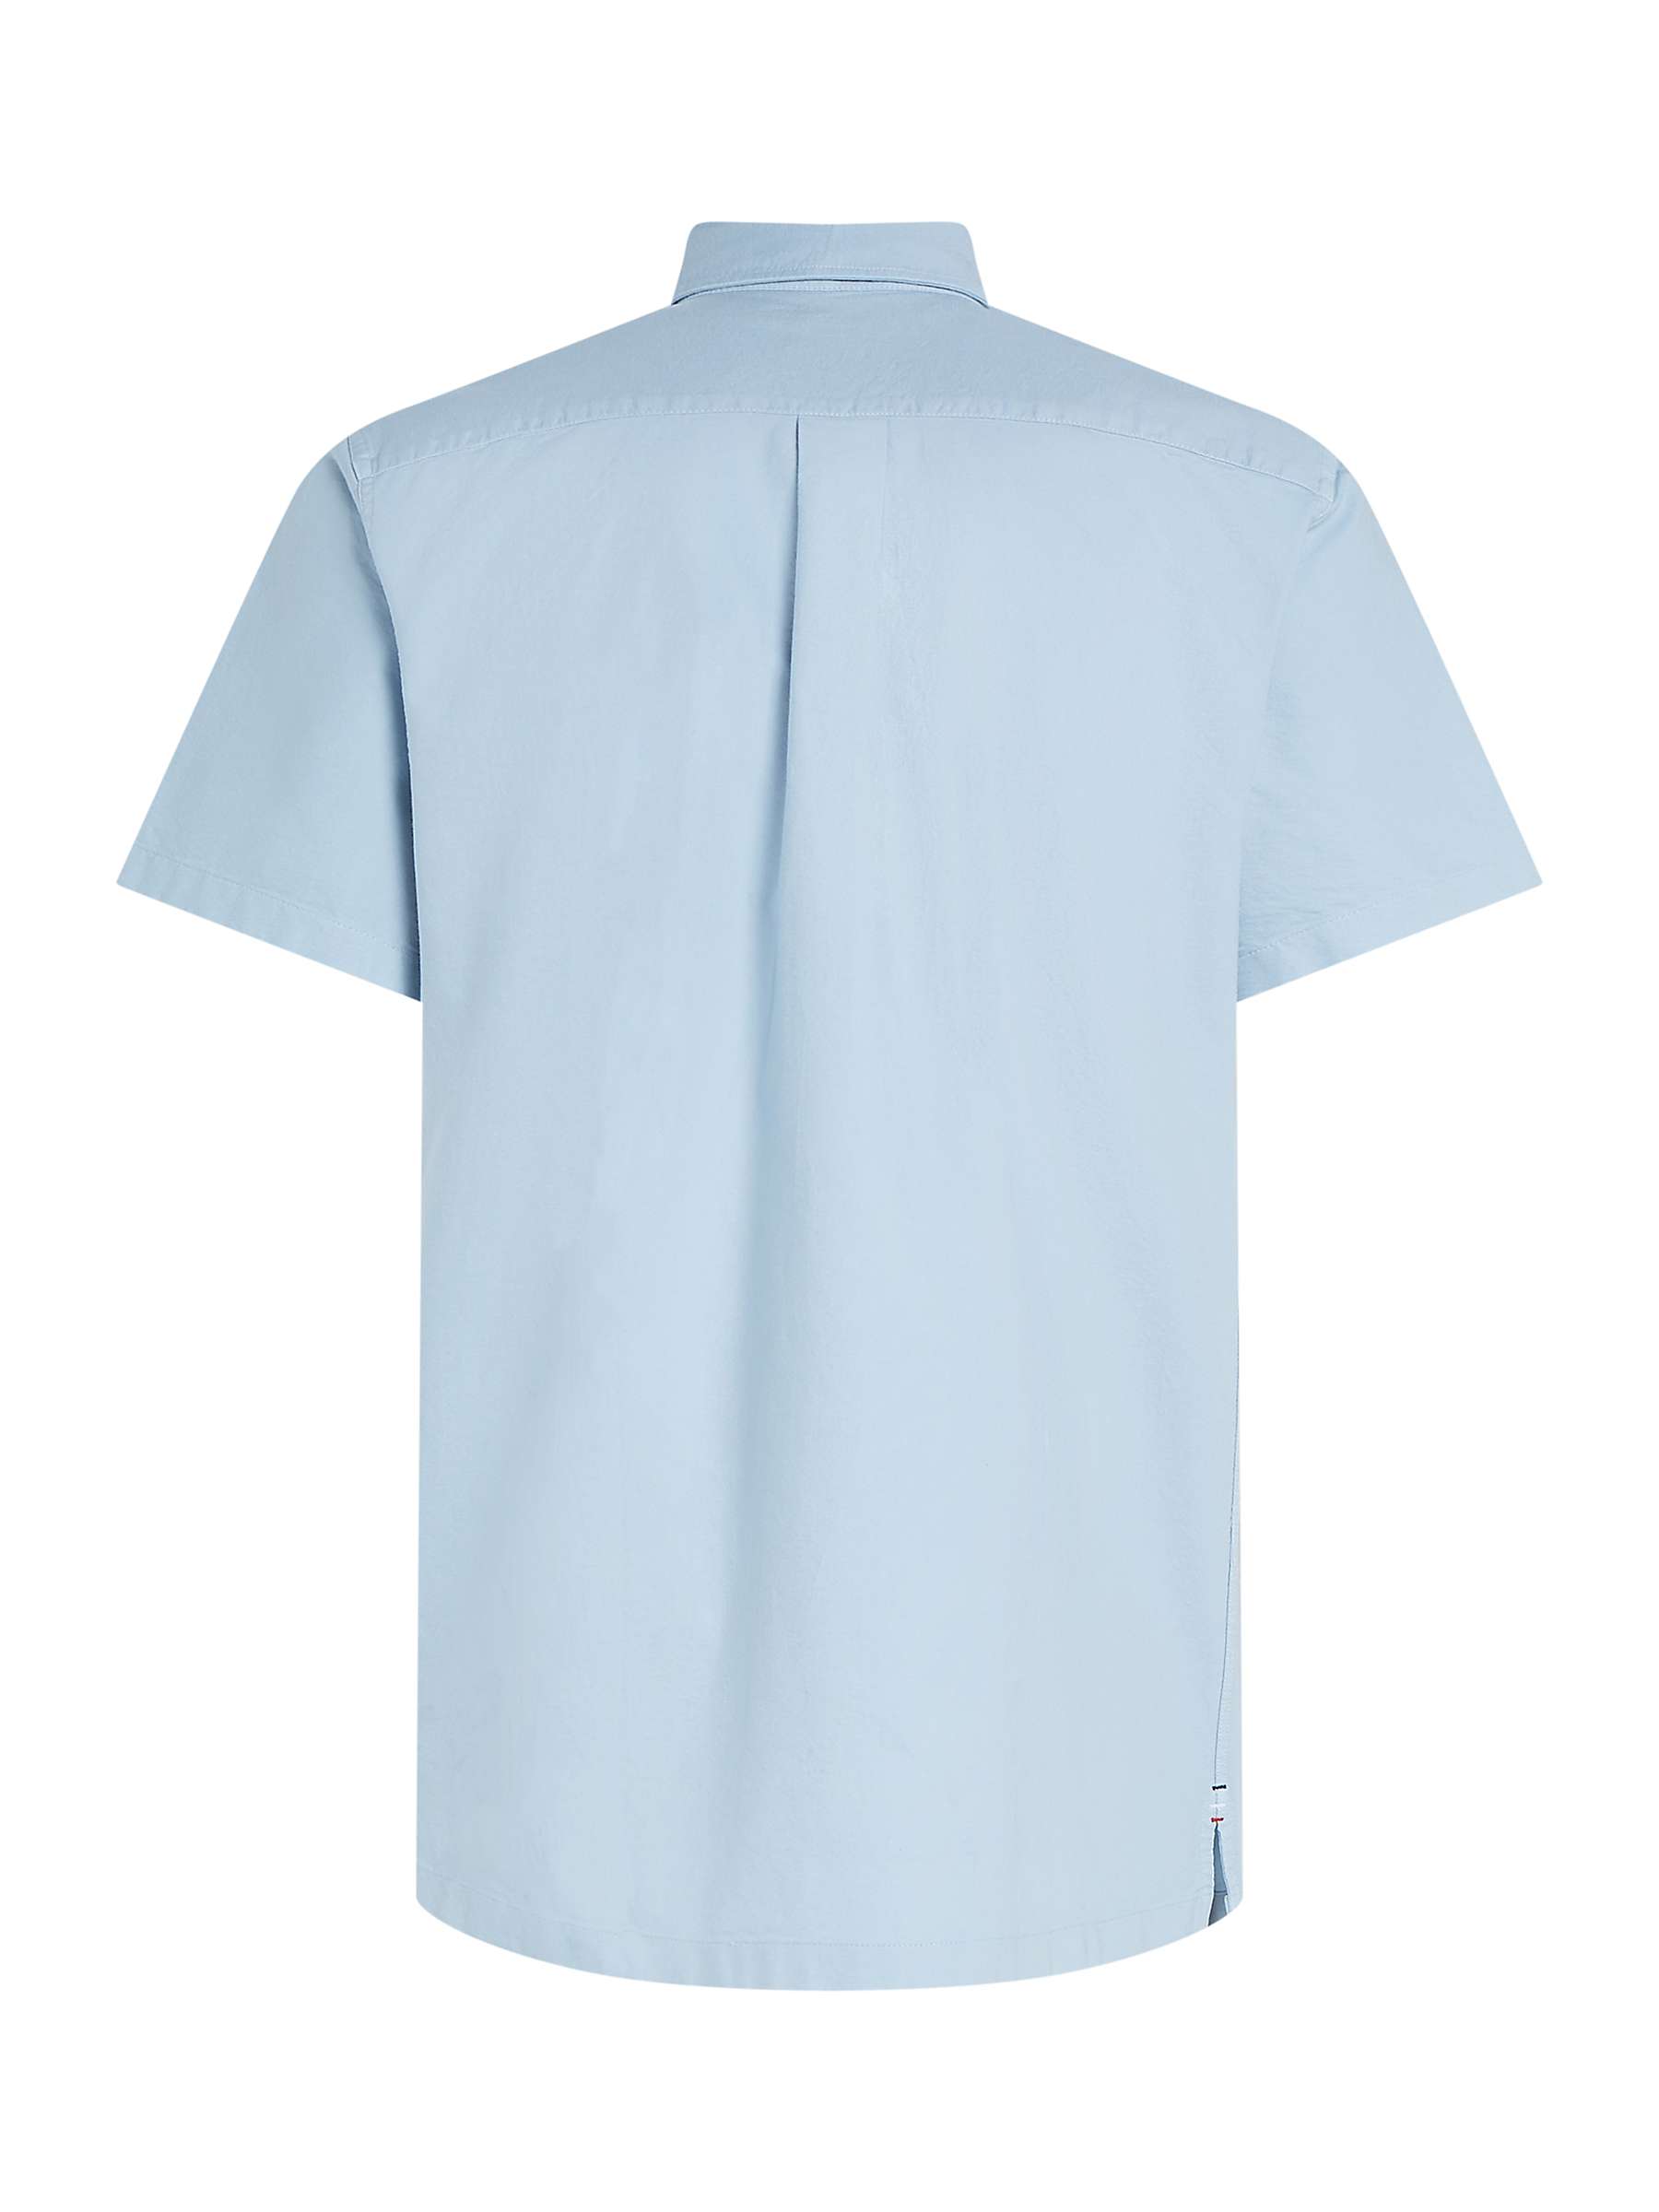 Buy Tommy Hilfiger Oxford Regular Fit Short Sleeve Shirt, Blue Online at johnlewis.com